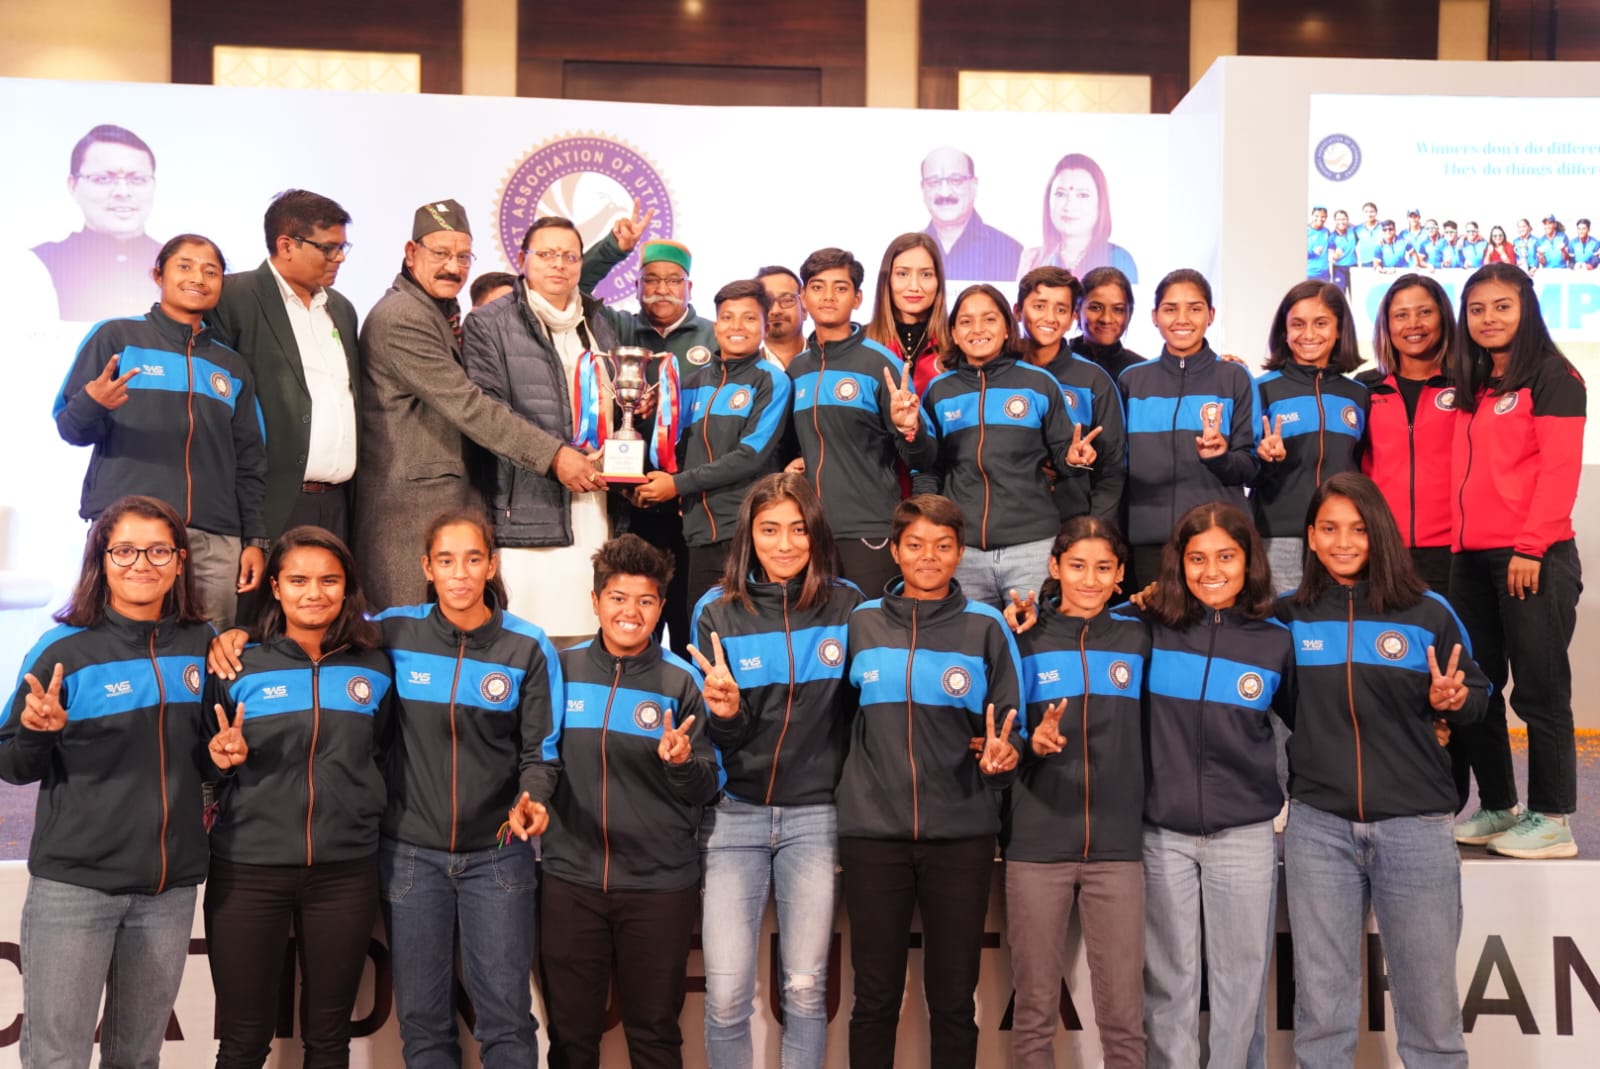 उत्तराखण्ड महिला अंडर 19 क्रिकेट टीम के सदस्यों को सम्मानित किया,,,।